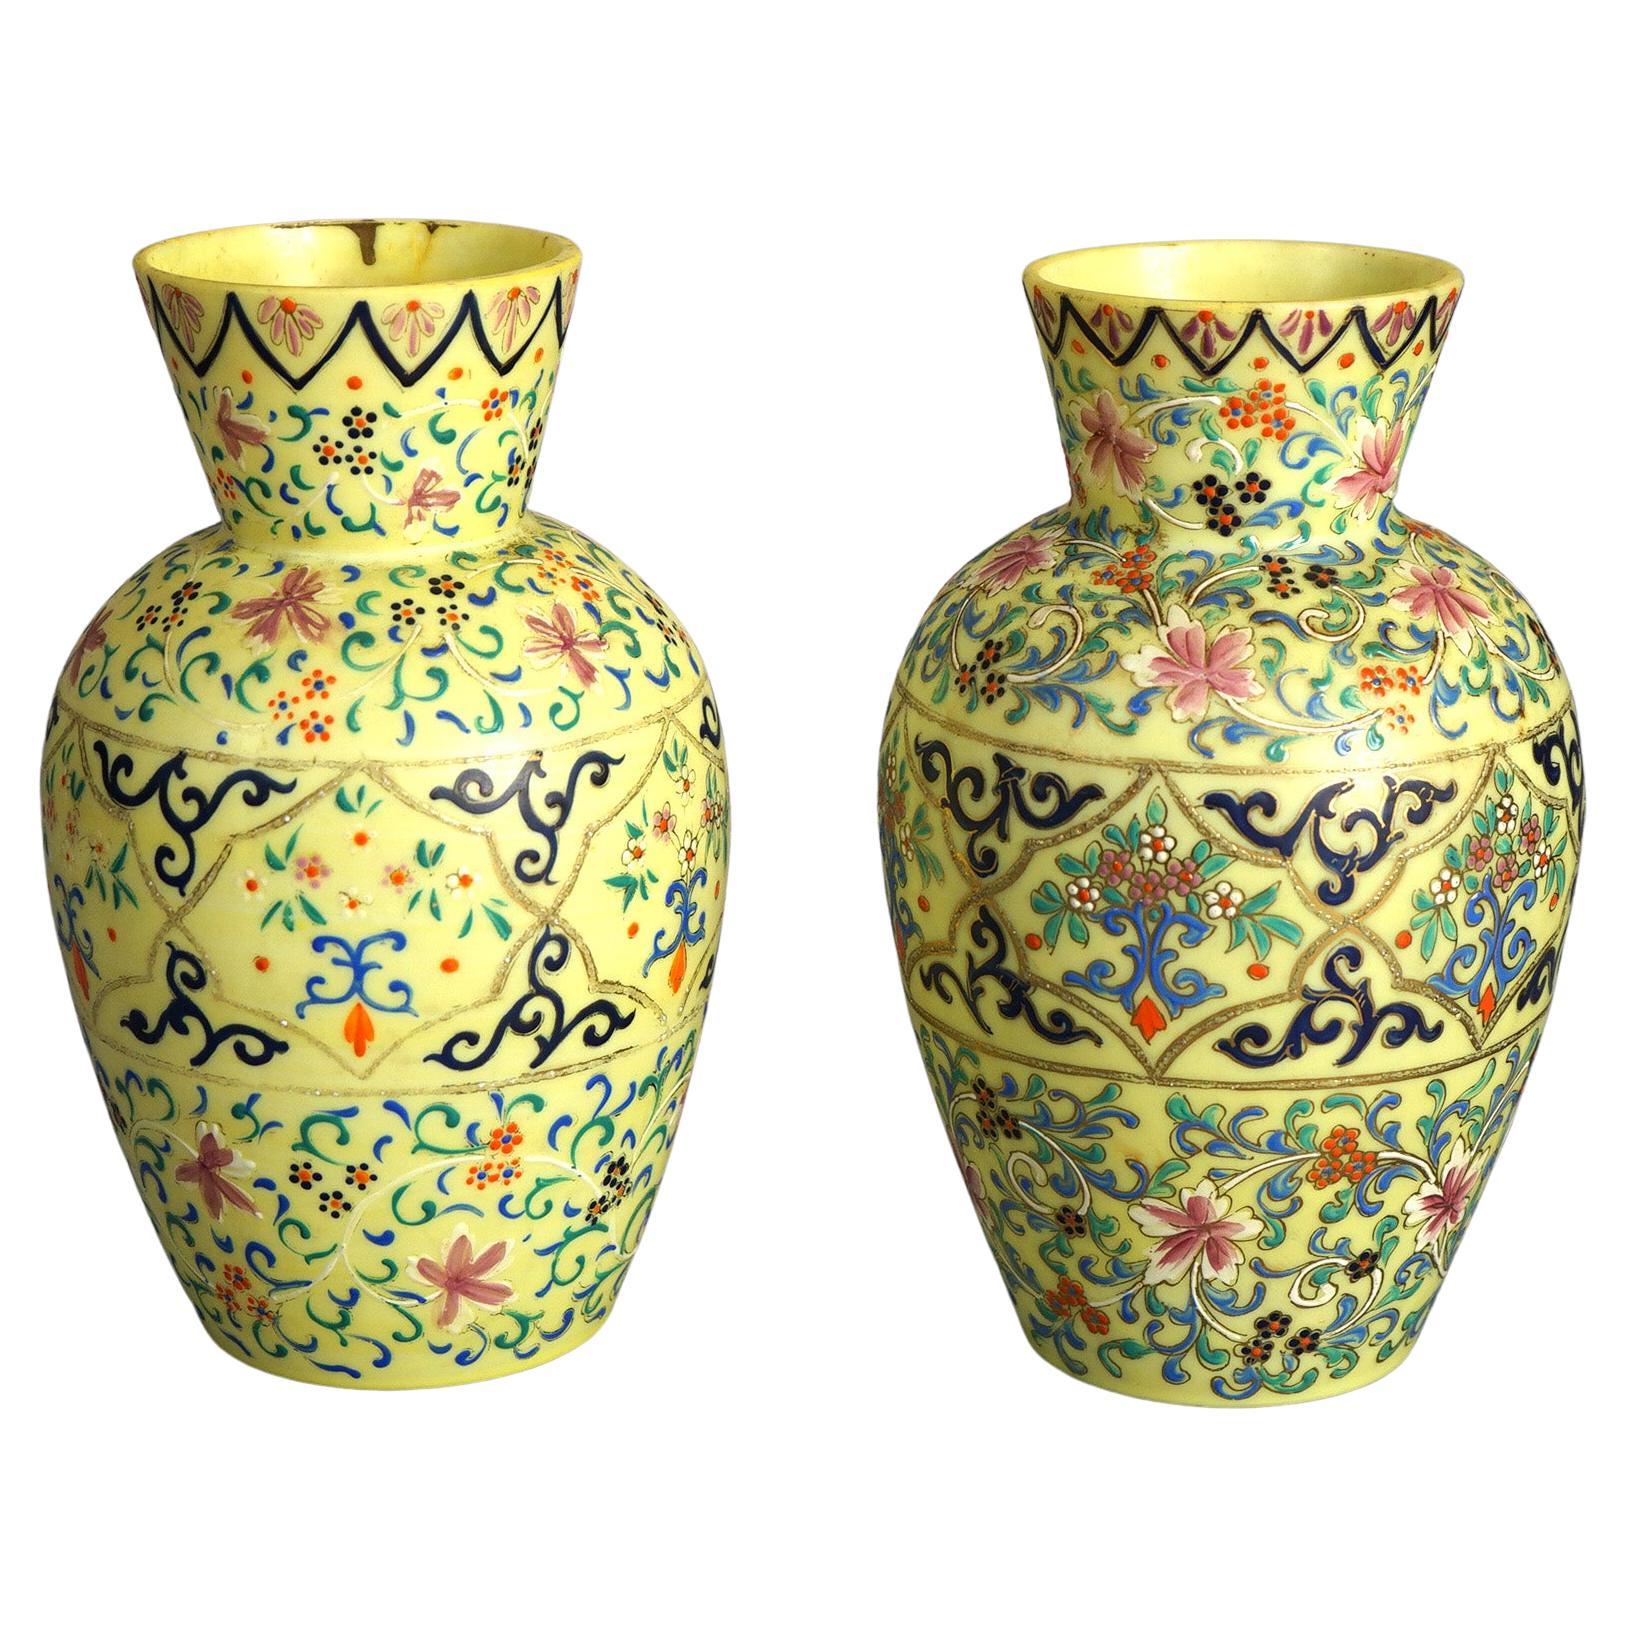 Antikes Paar Opalin-Emaille dekoriert Kunstglas Vasen mit Blumen & Scroll-Elemente, C1900

Maße - 8,5 